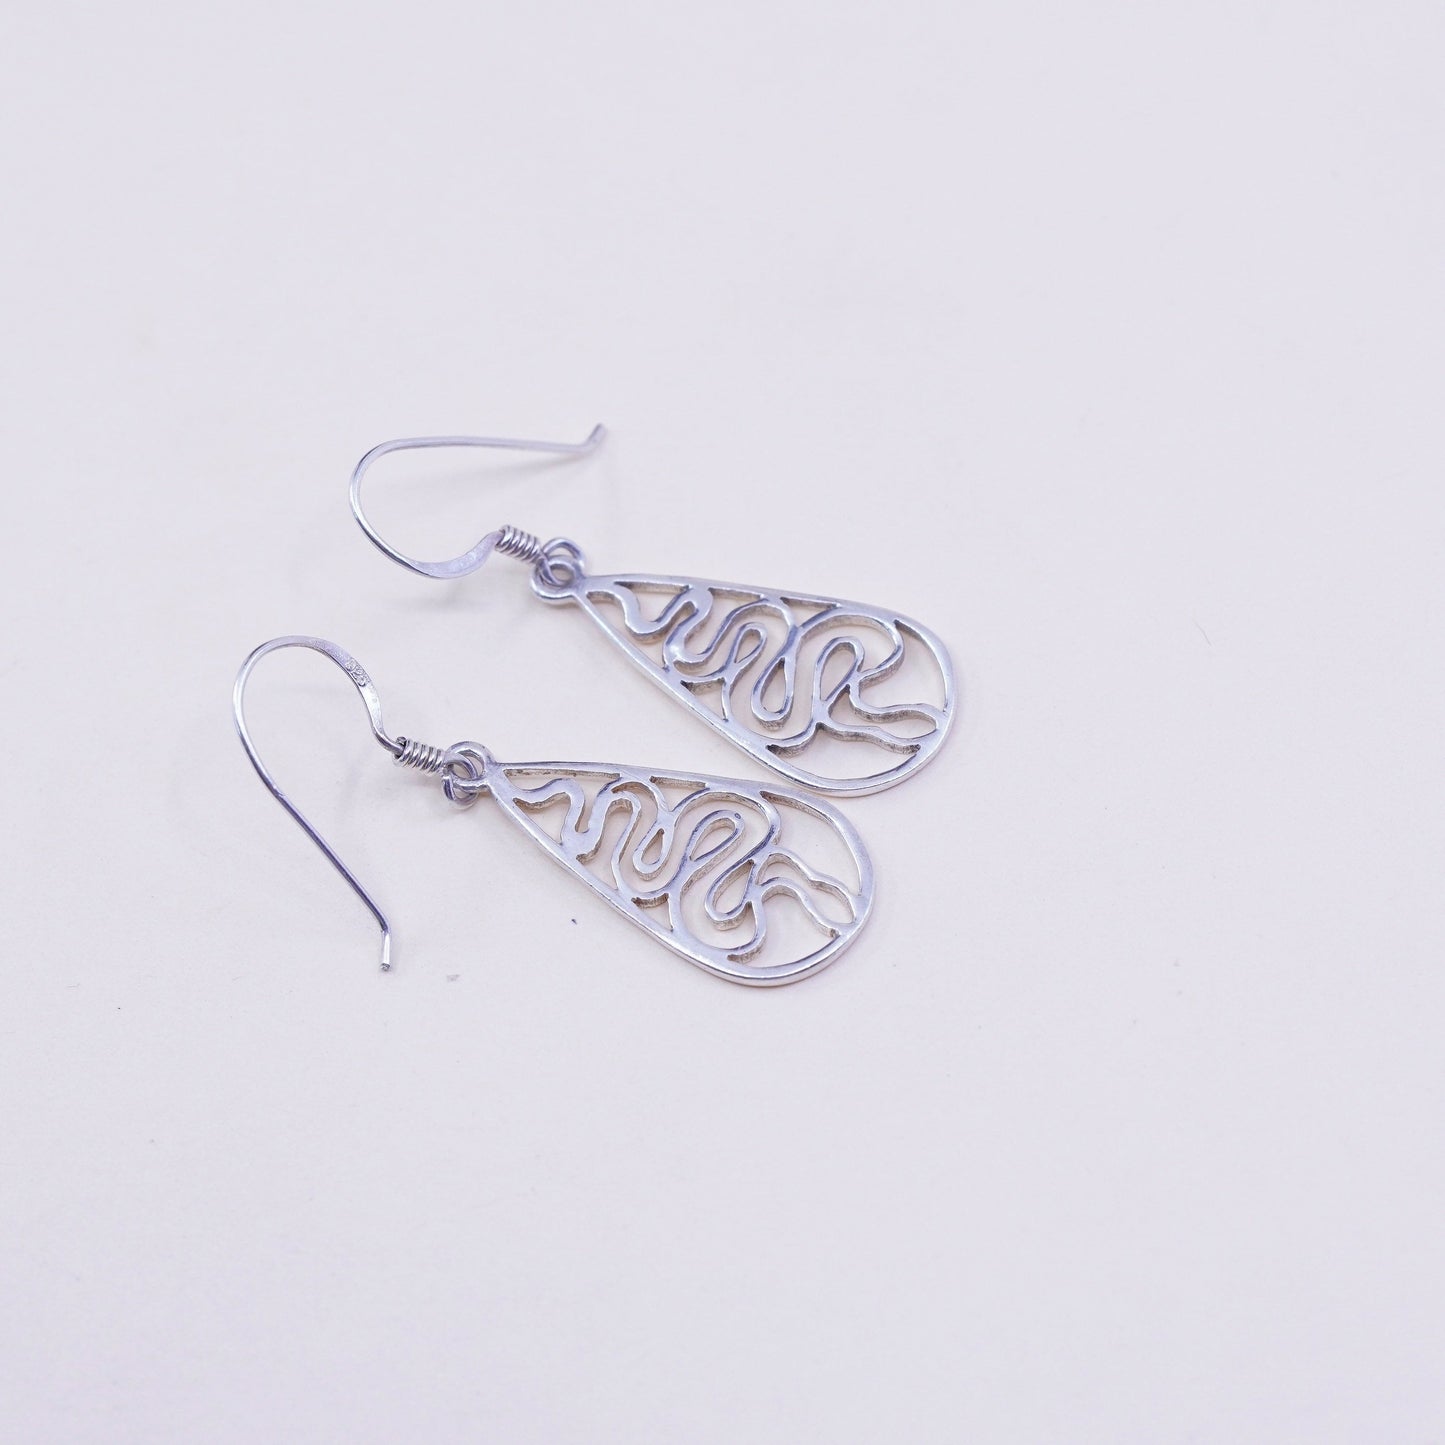 Vintage Sterling silver handmade earrings, 925 filigree teardrop dangles